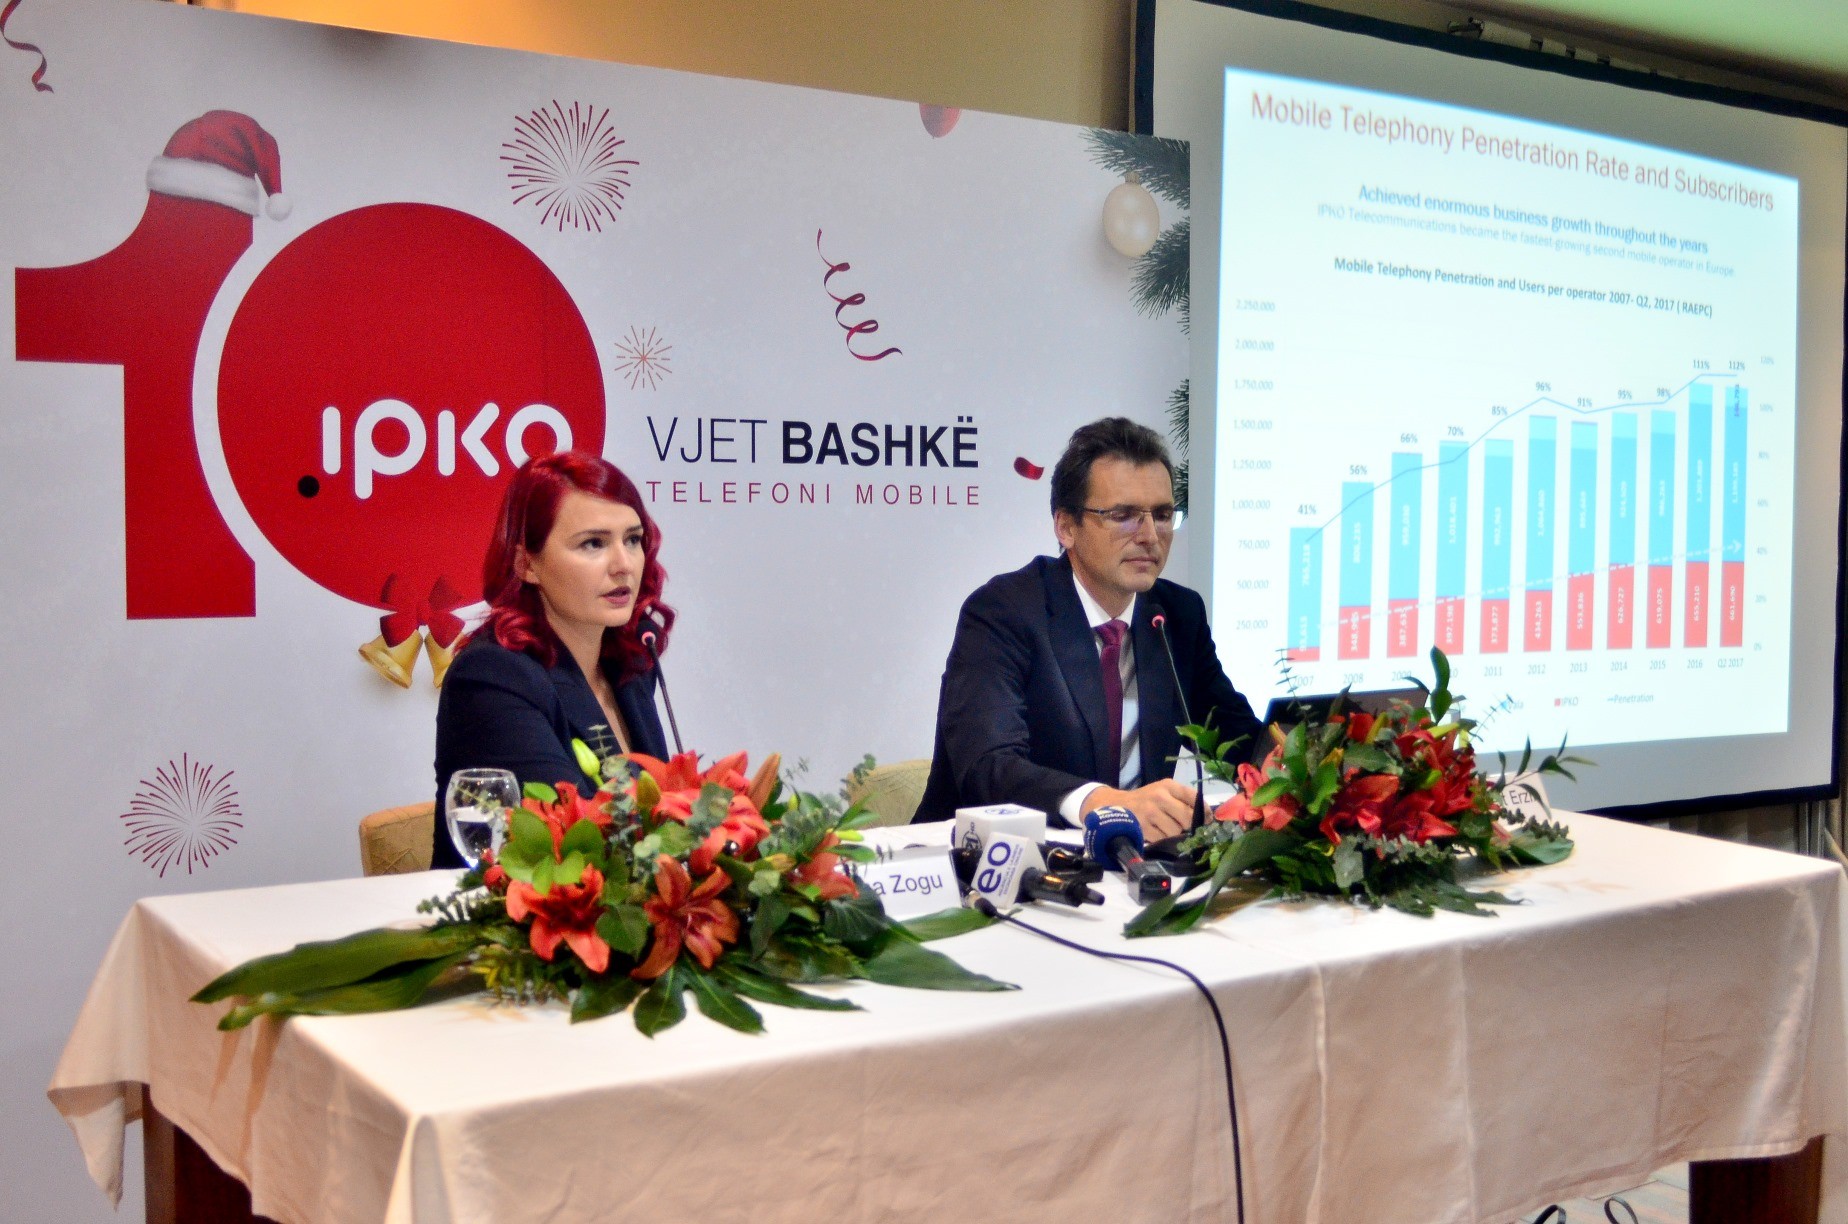 Për 10 vite Ipko ka investuar 310 milionë euro në Kosovë